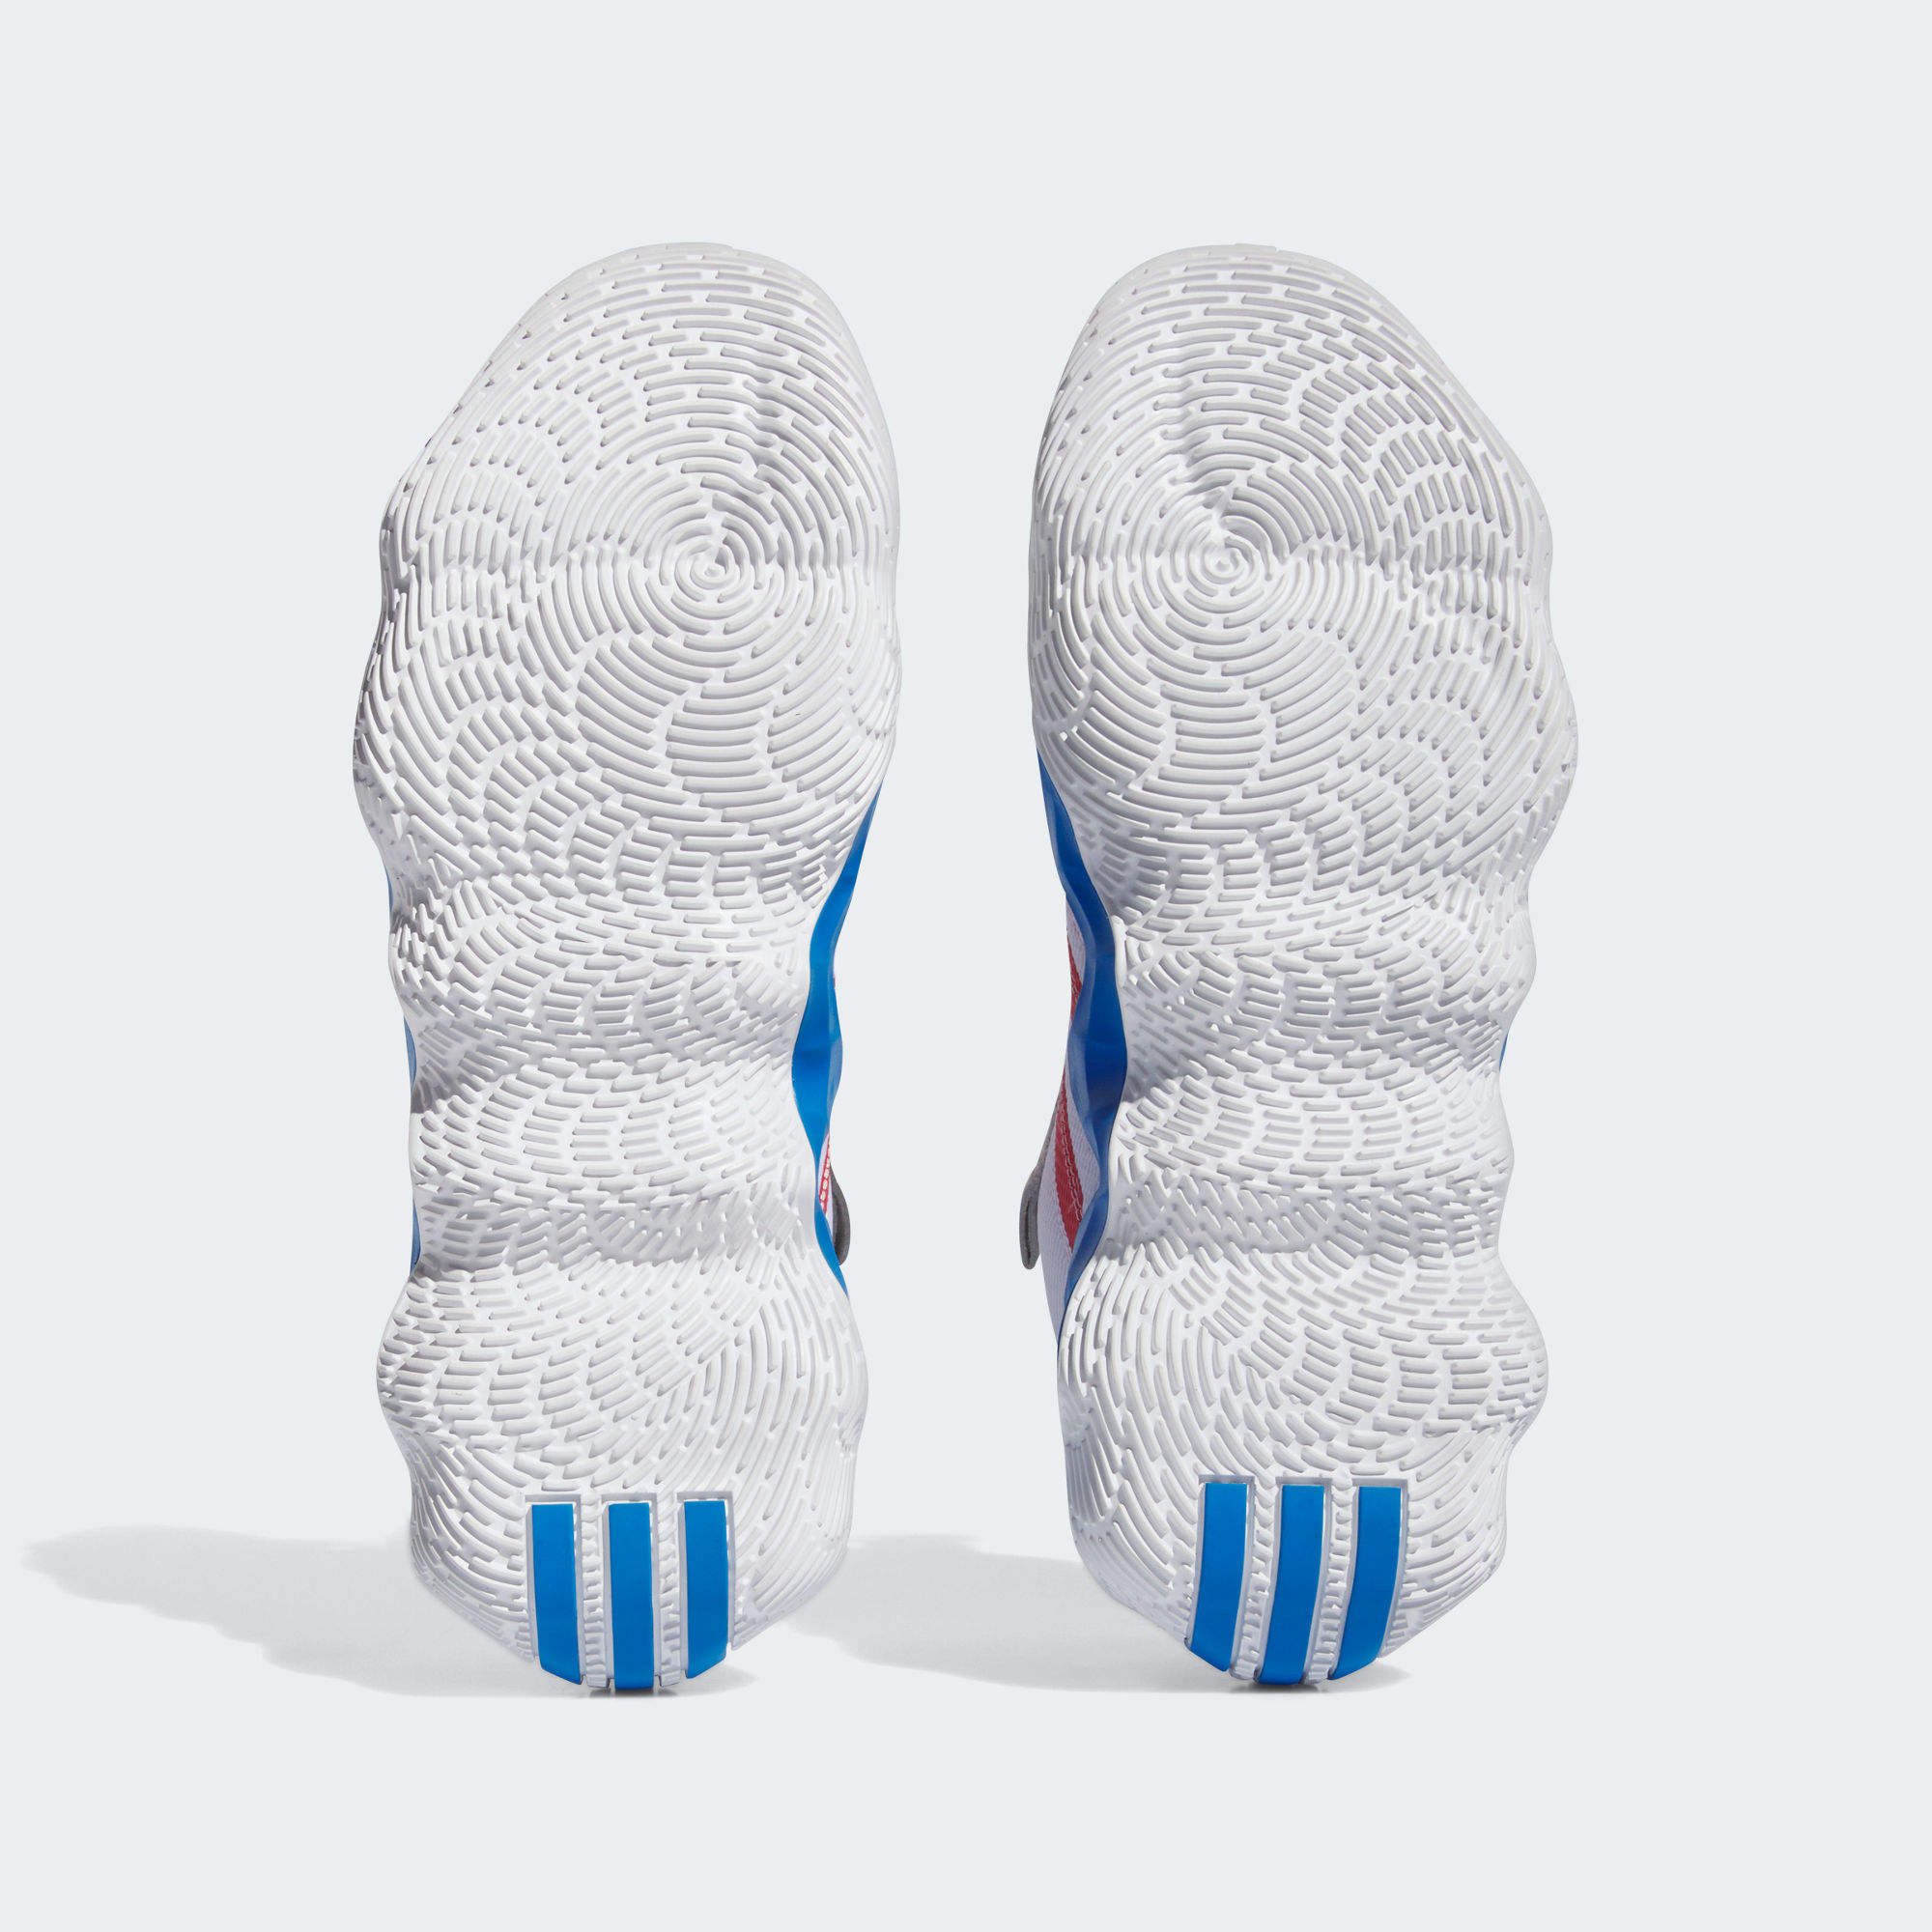 EXHIBIT B 運動鞋- 白色| 男子| adidas(愛迪達)香港官方網上商店